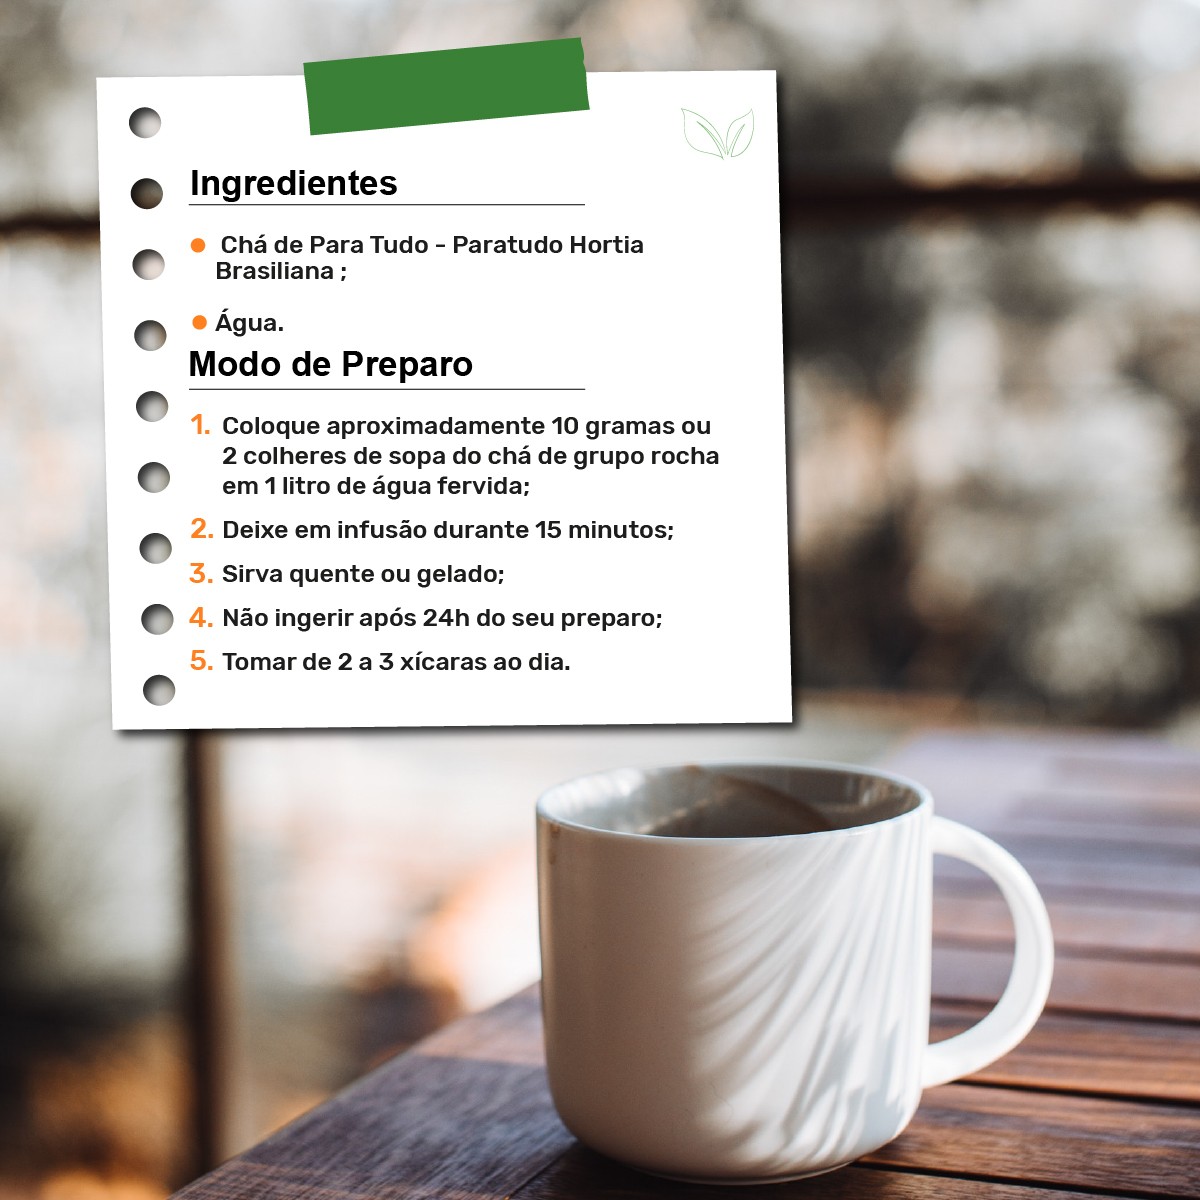 Chá de Para Tudo – Paratudo Hortia Brasiliana – 100g